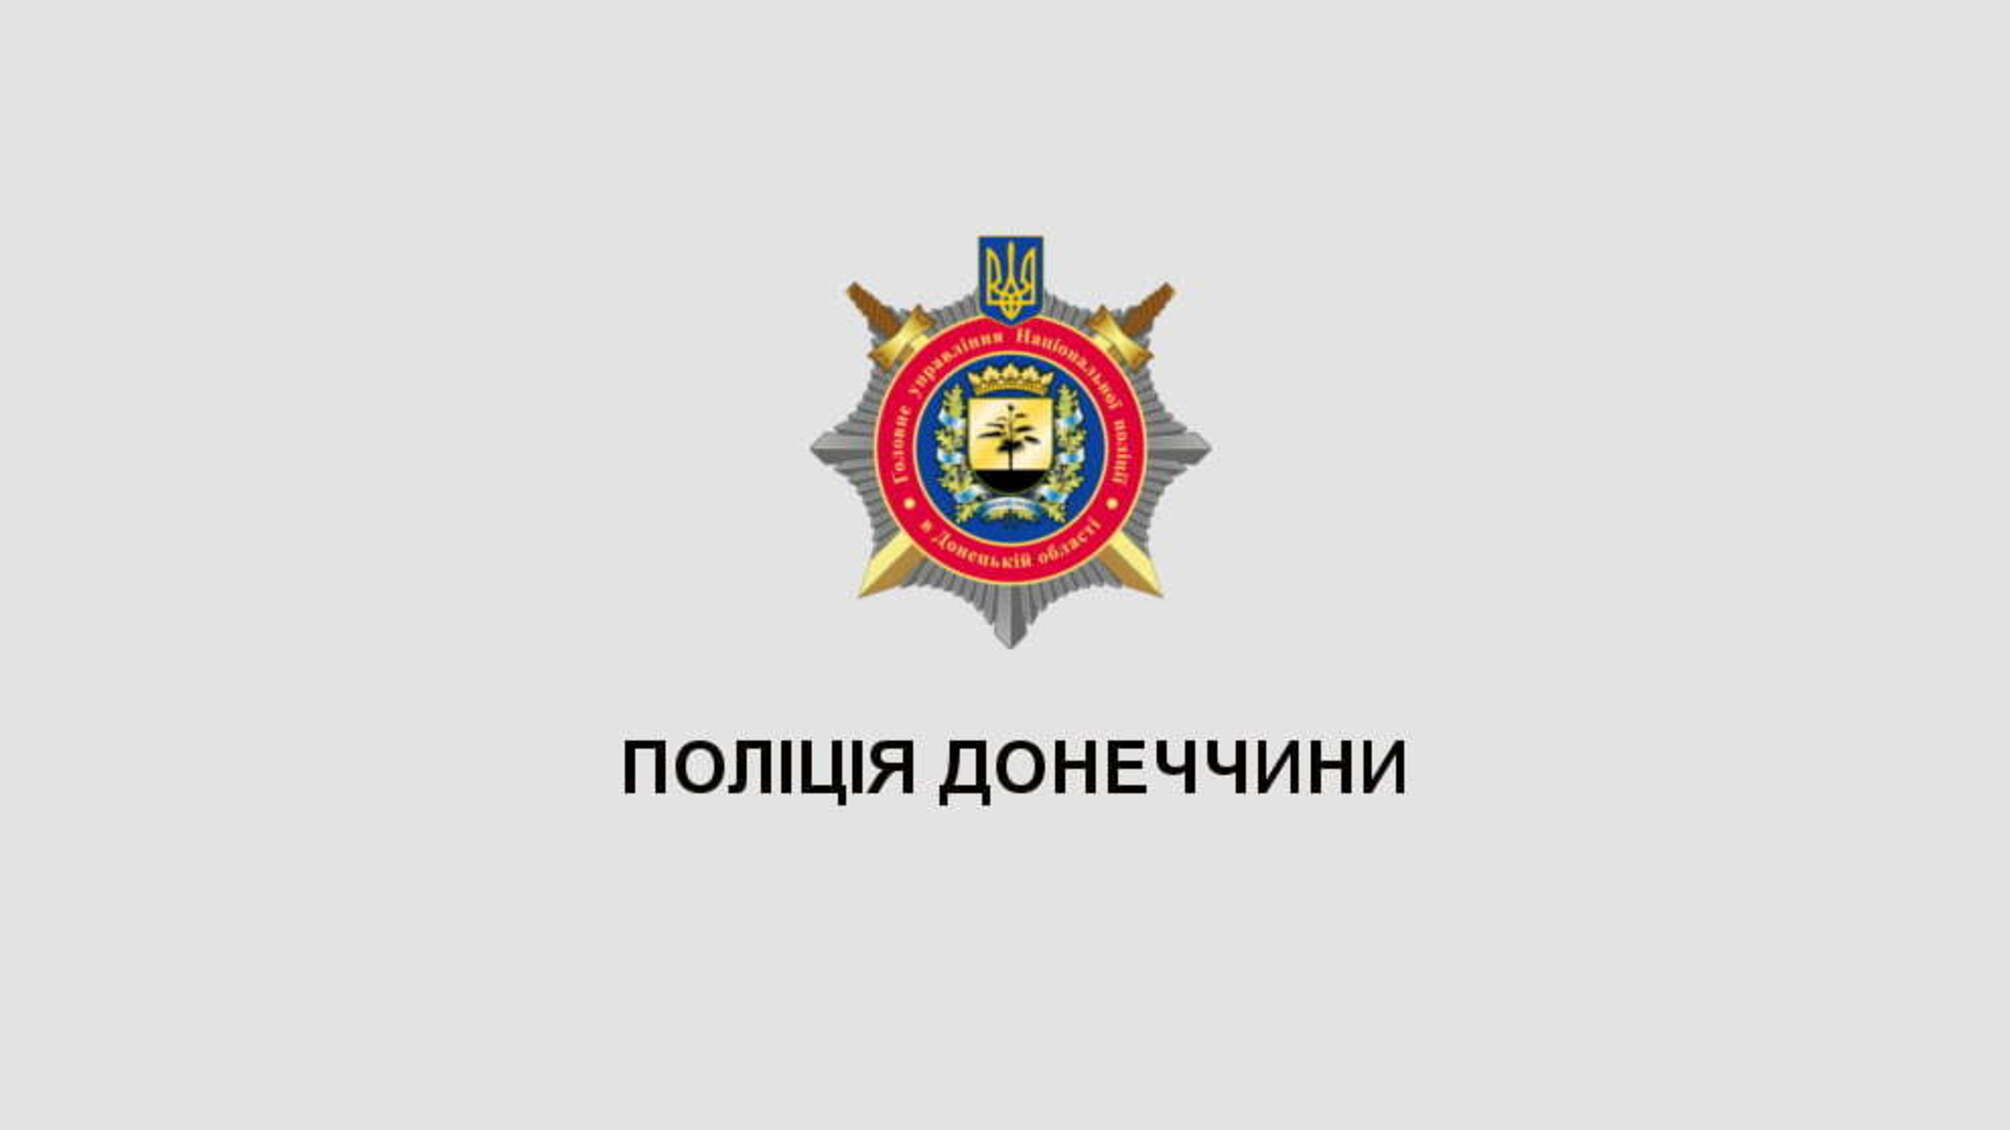 На Донеччині правоохоронці перекрили канал постачання фальсифікованих алкогольних напоїв